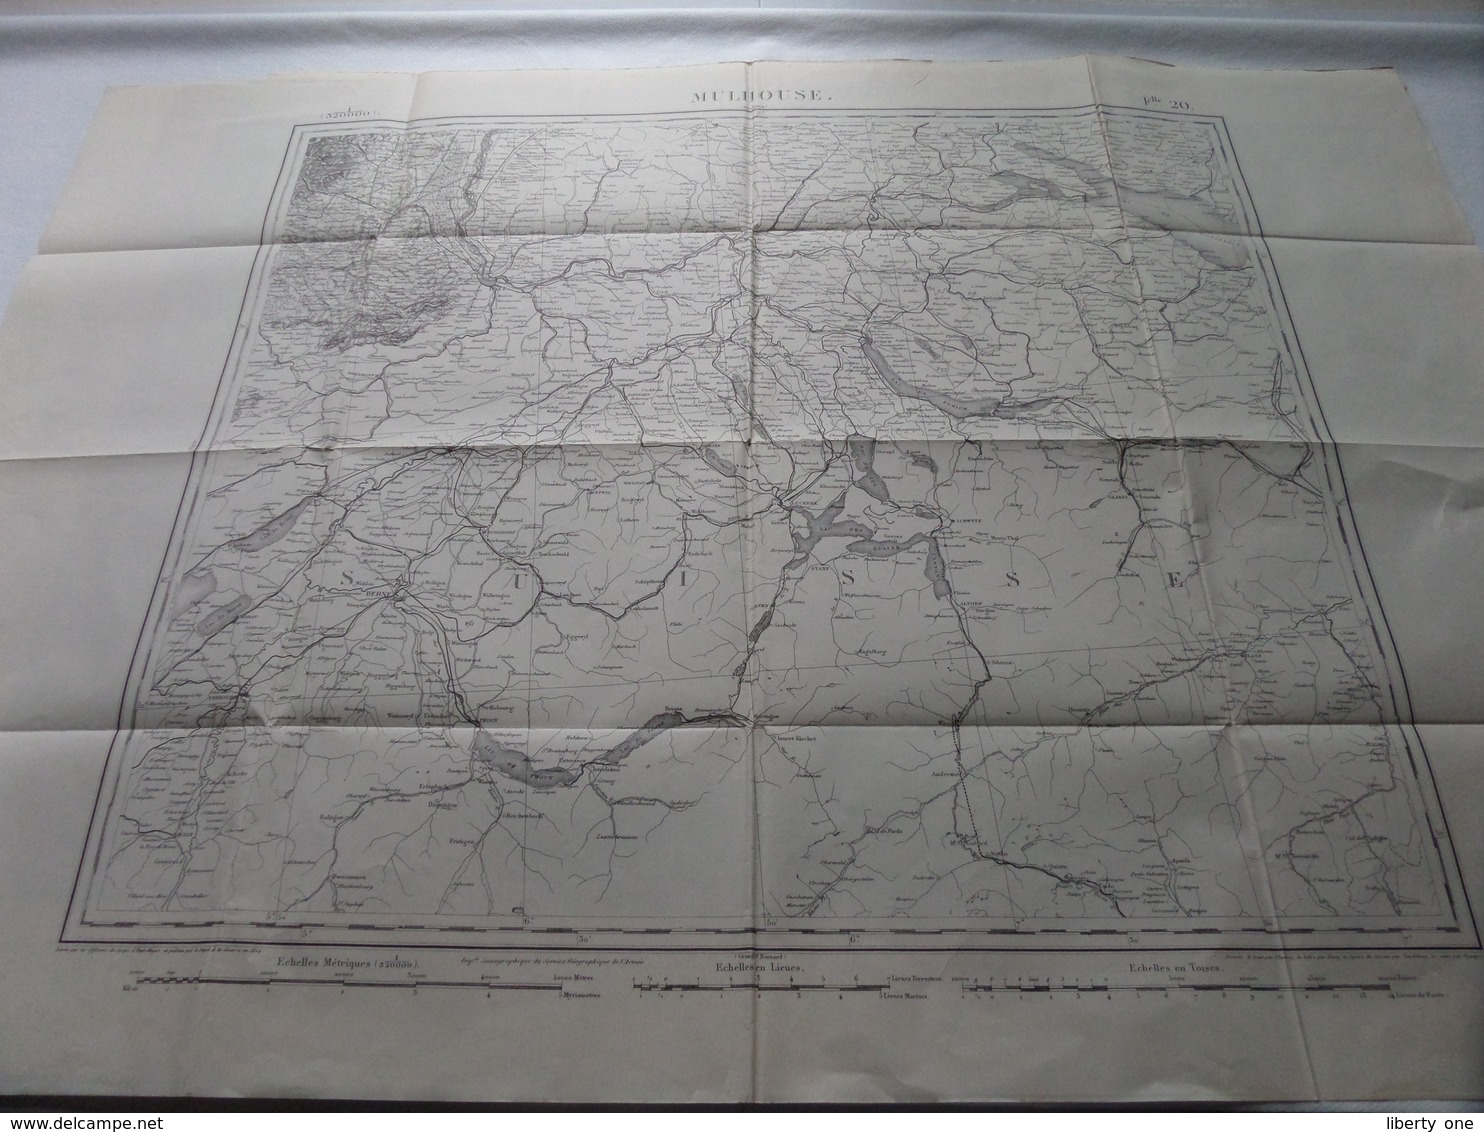 MULHOUSE ( Flle 20 ) Schaal / Echelle / Scale 1: 320.000 ( Thierry / Hacq / Dandeleux ) - ( Voir / Zie Photo) - Cartes Géographiques